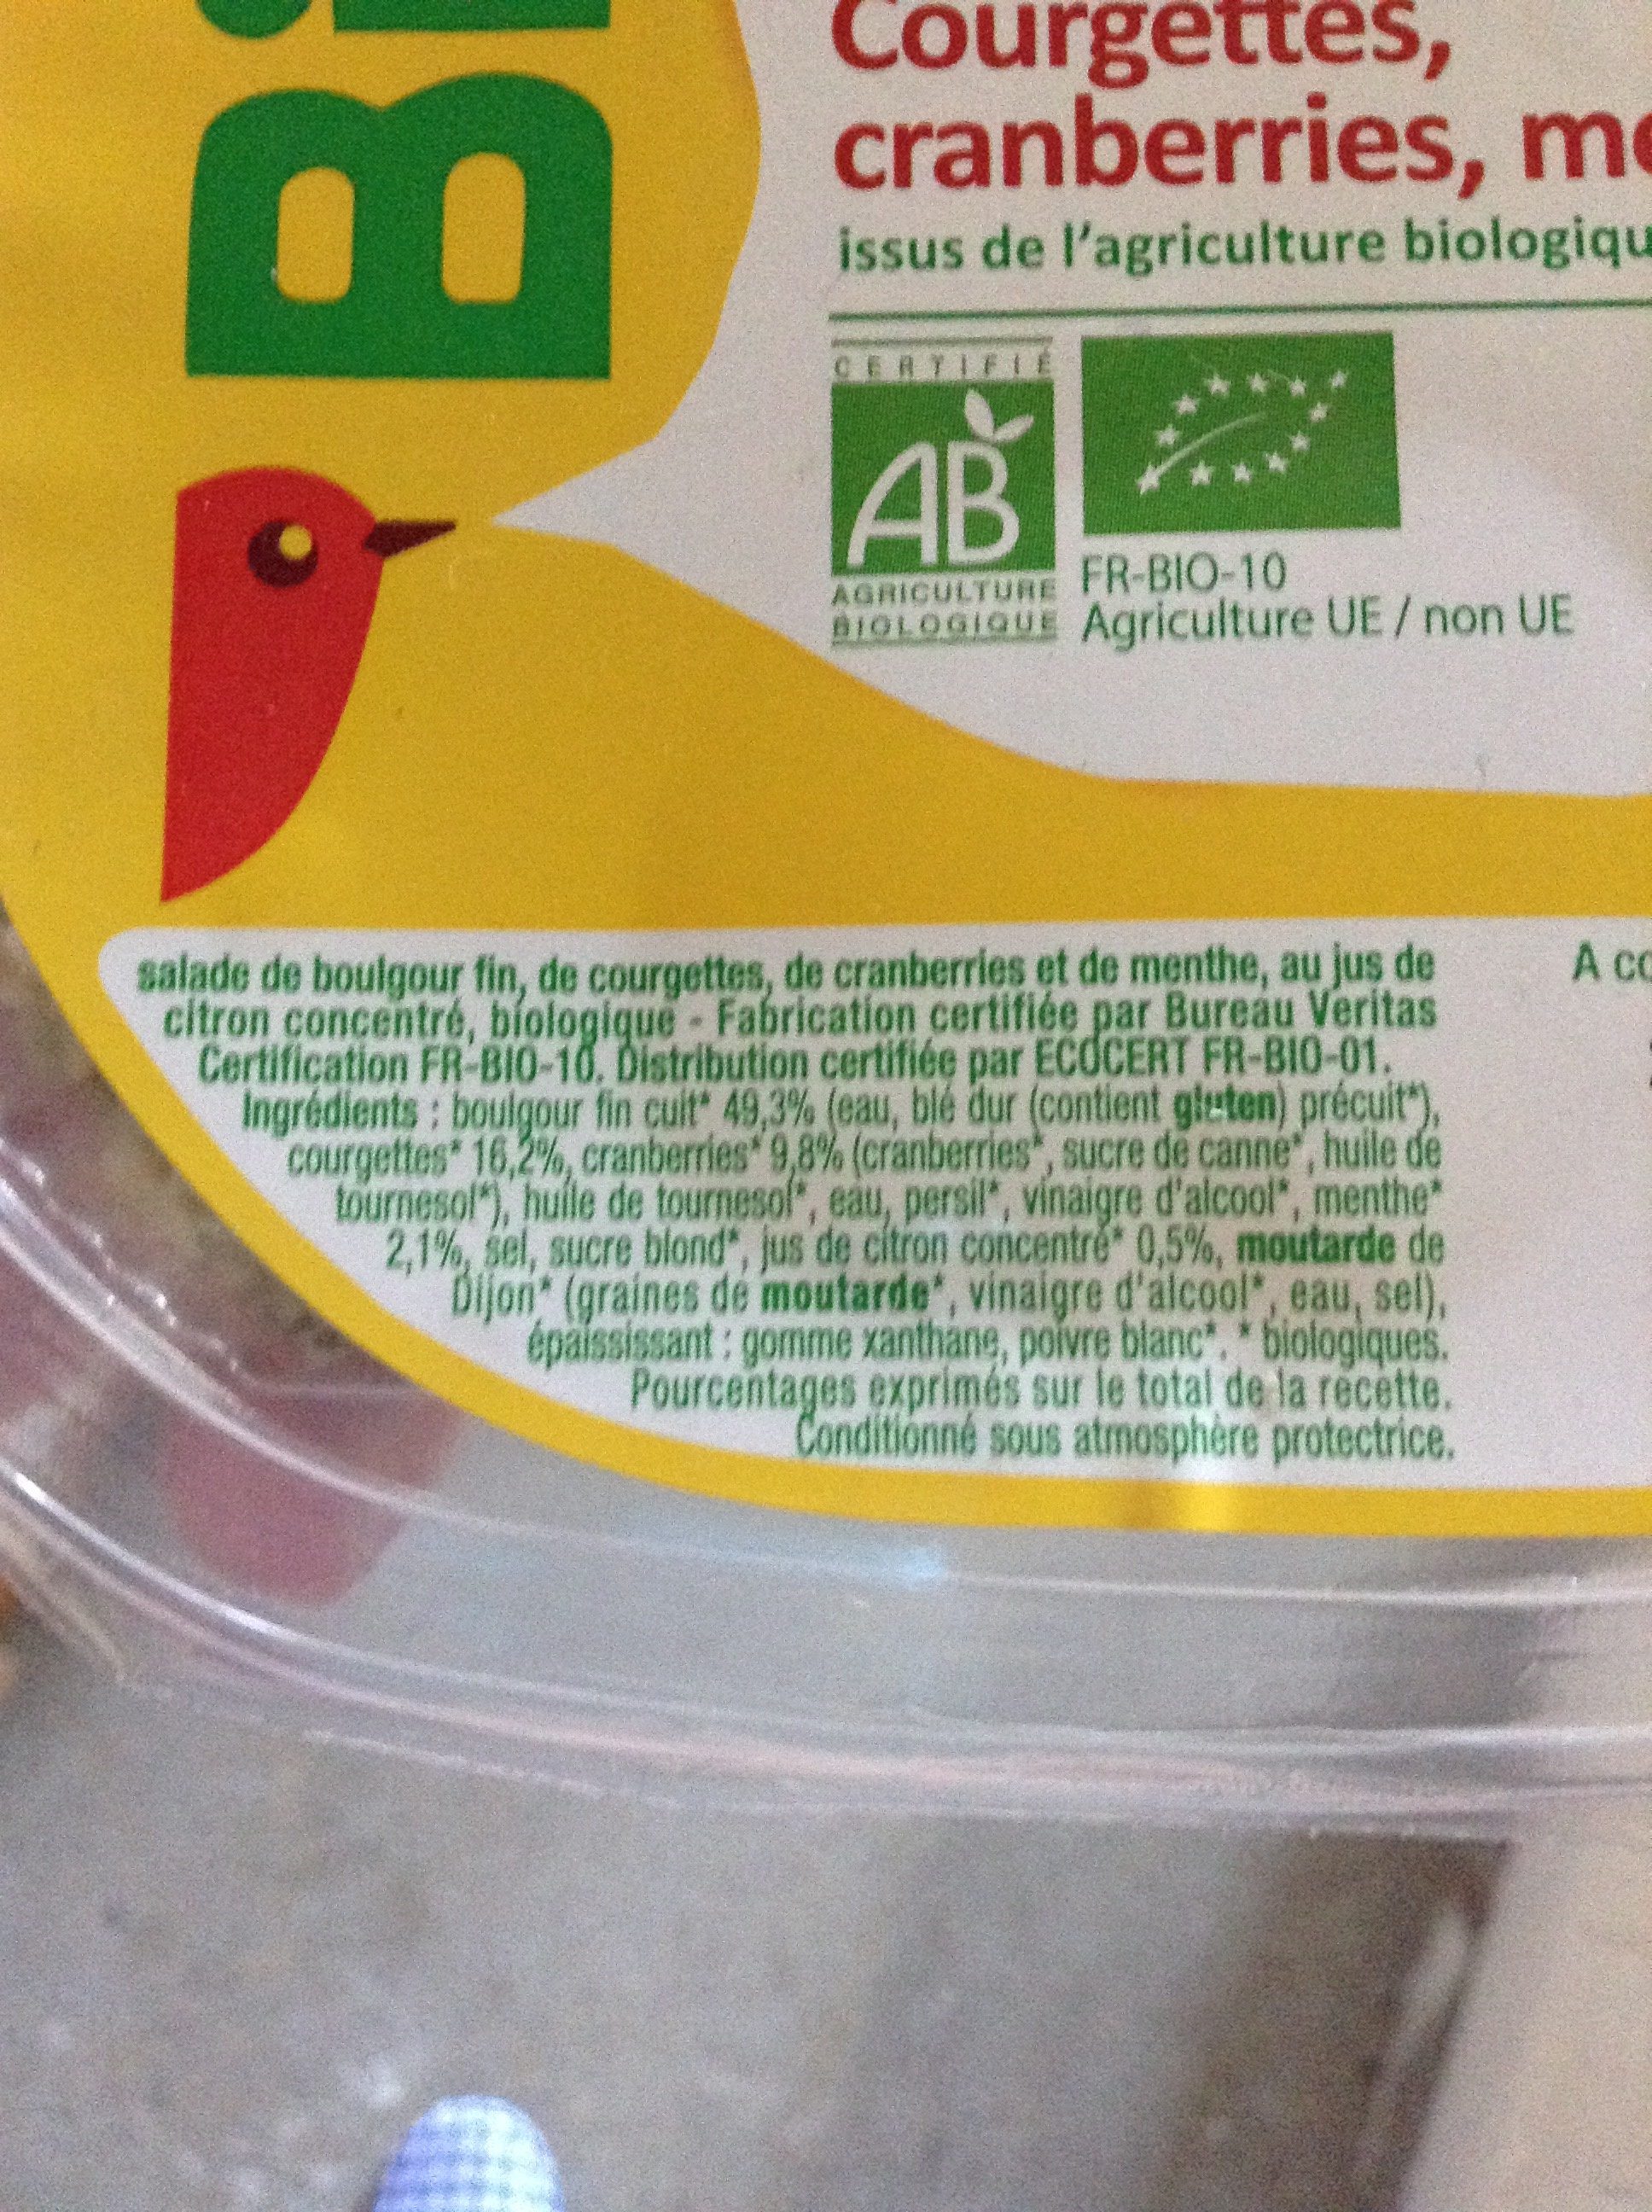 Boulgour courgettes, cranberries, menthe issus de l'agriculture biologique - Ingredients - fr